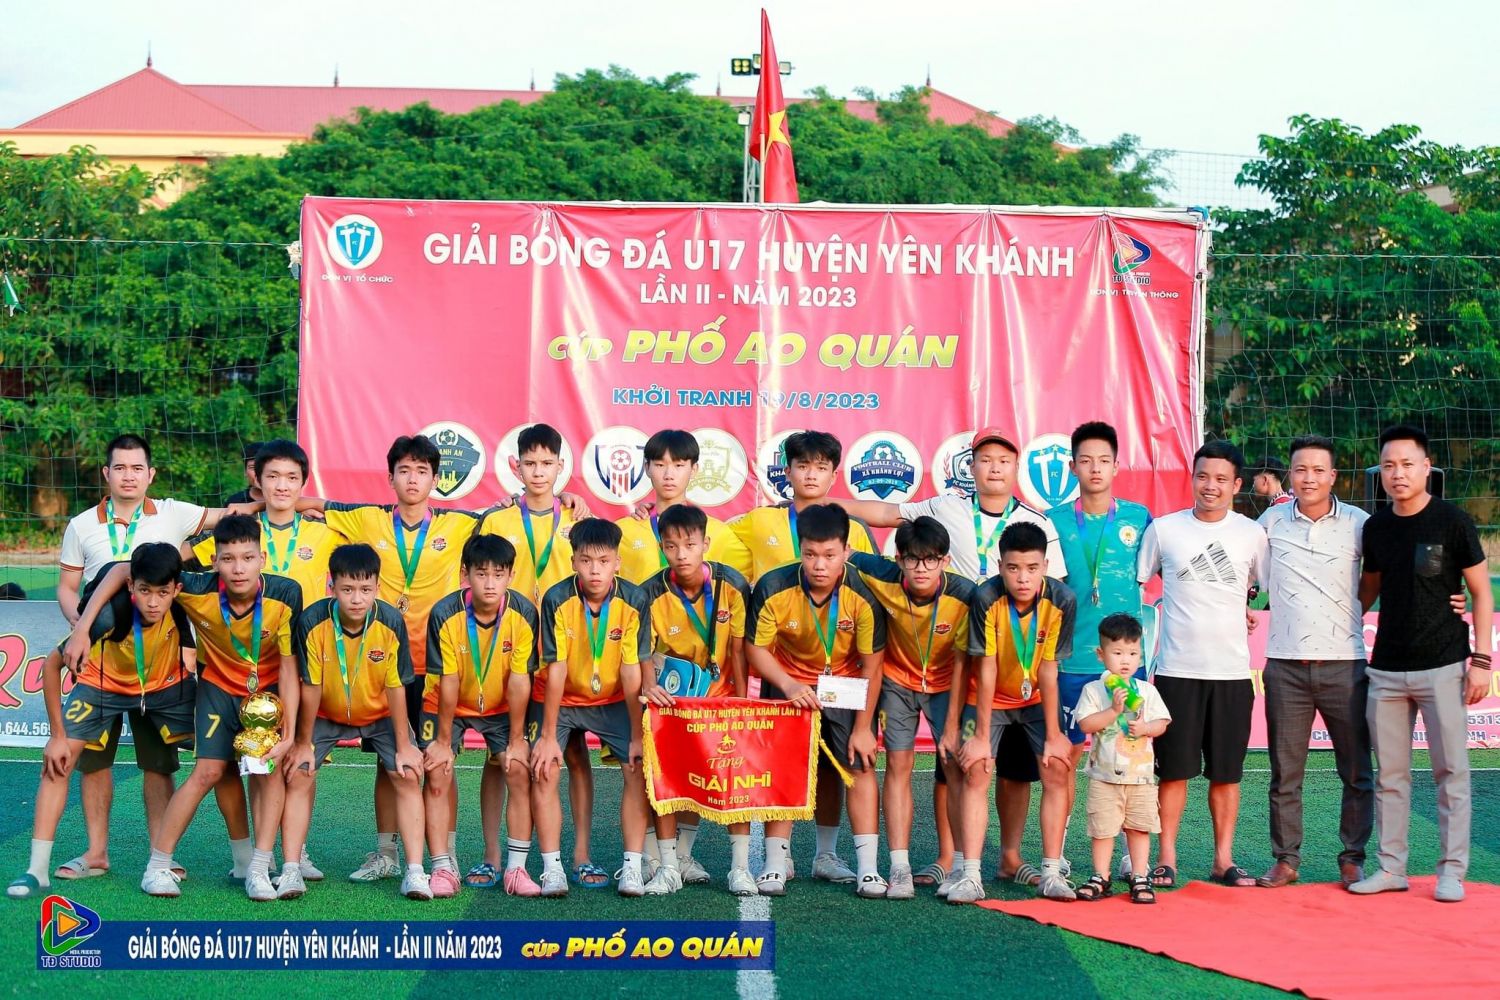 u17 xã Khánh Thiện hoàn thành xuất sắc chương trình giao lưu Giải bóng đá u 17 huyện Yên Khánh năm 2023